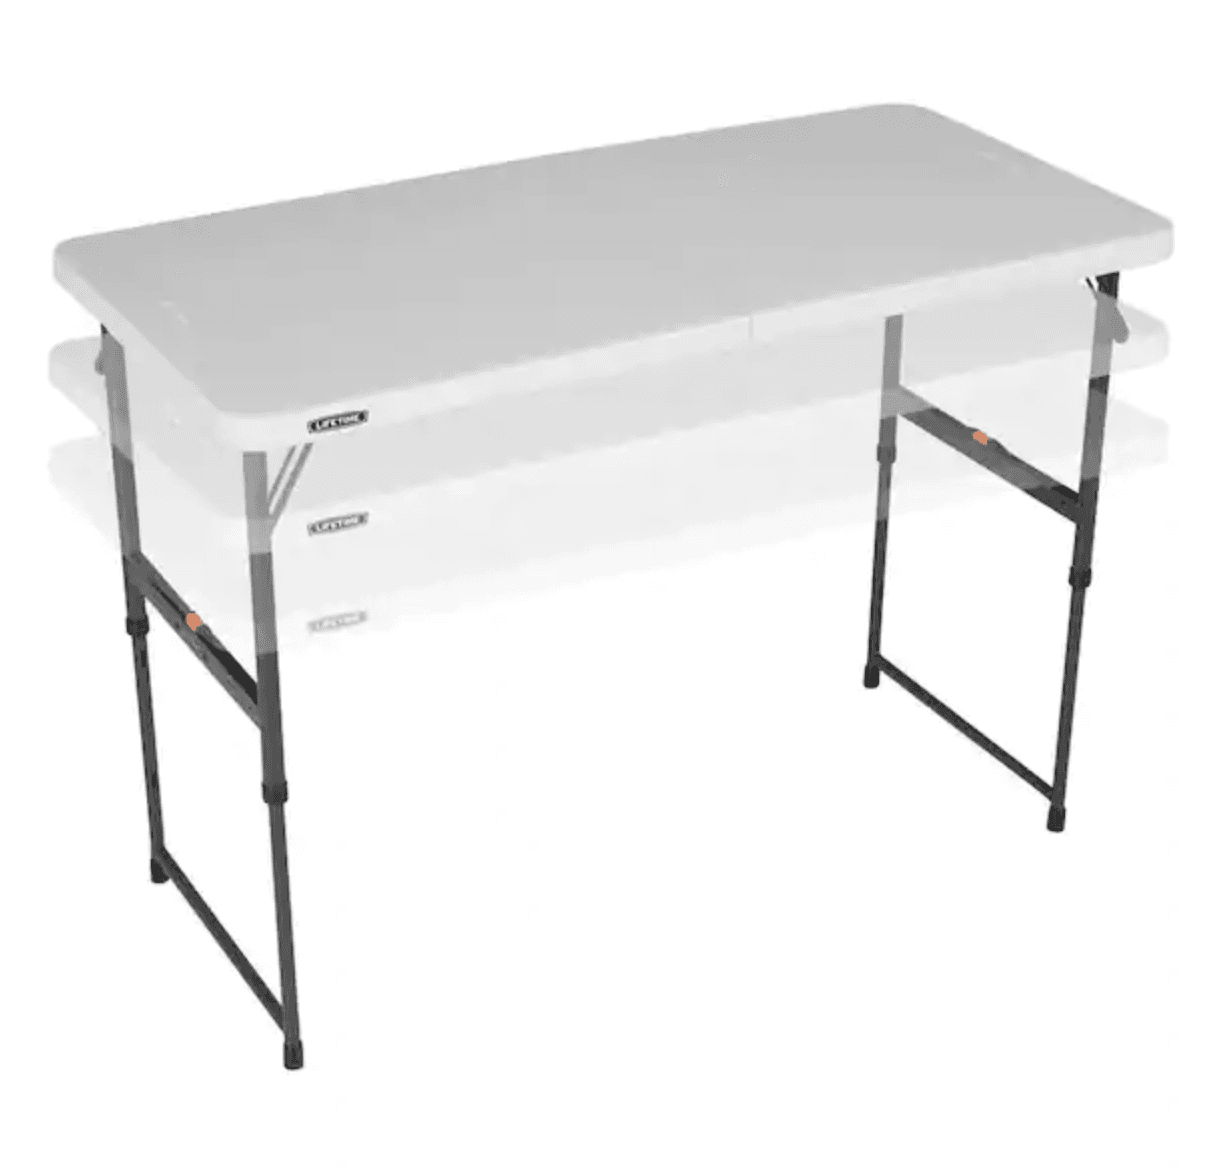 Lifetime Adjustable Height Folding Table 